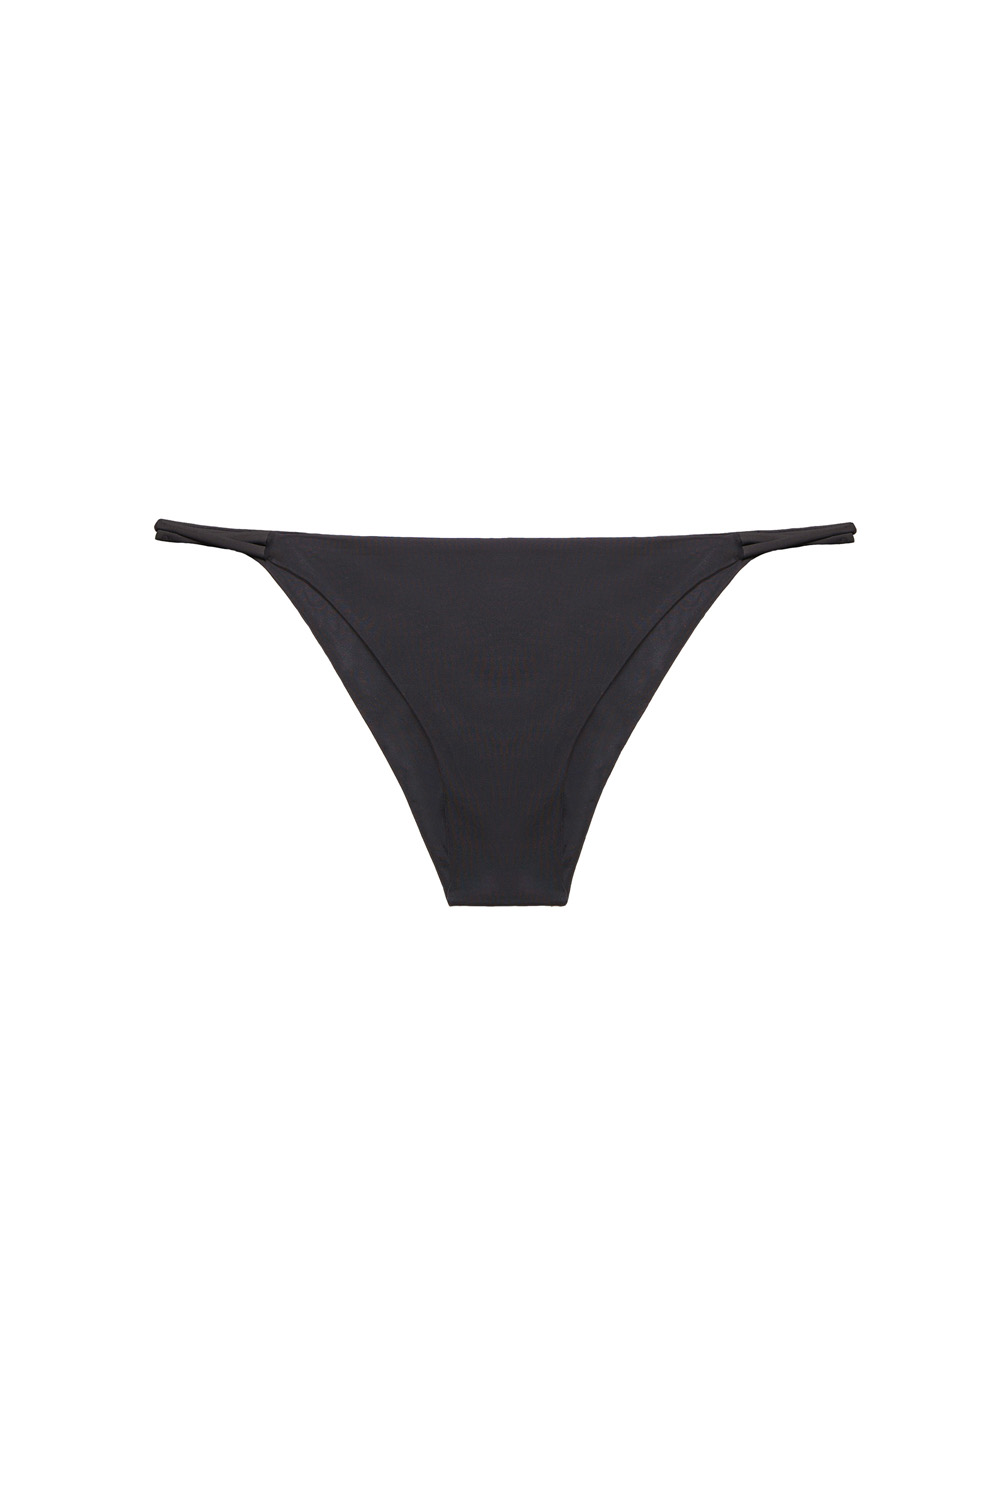 Milos bottom, by NOW_THEN eco swimwear / bikini ecológico